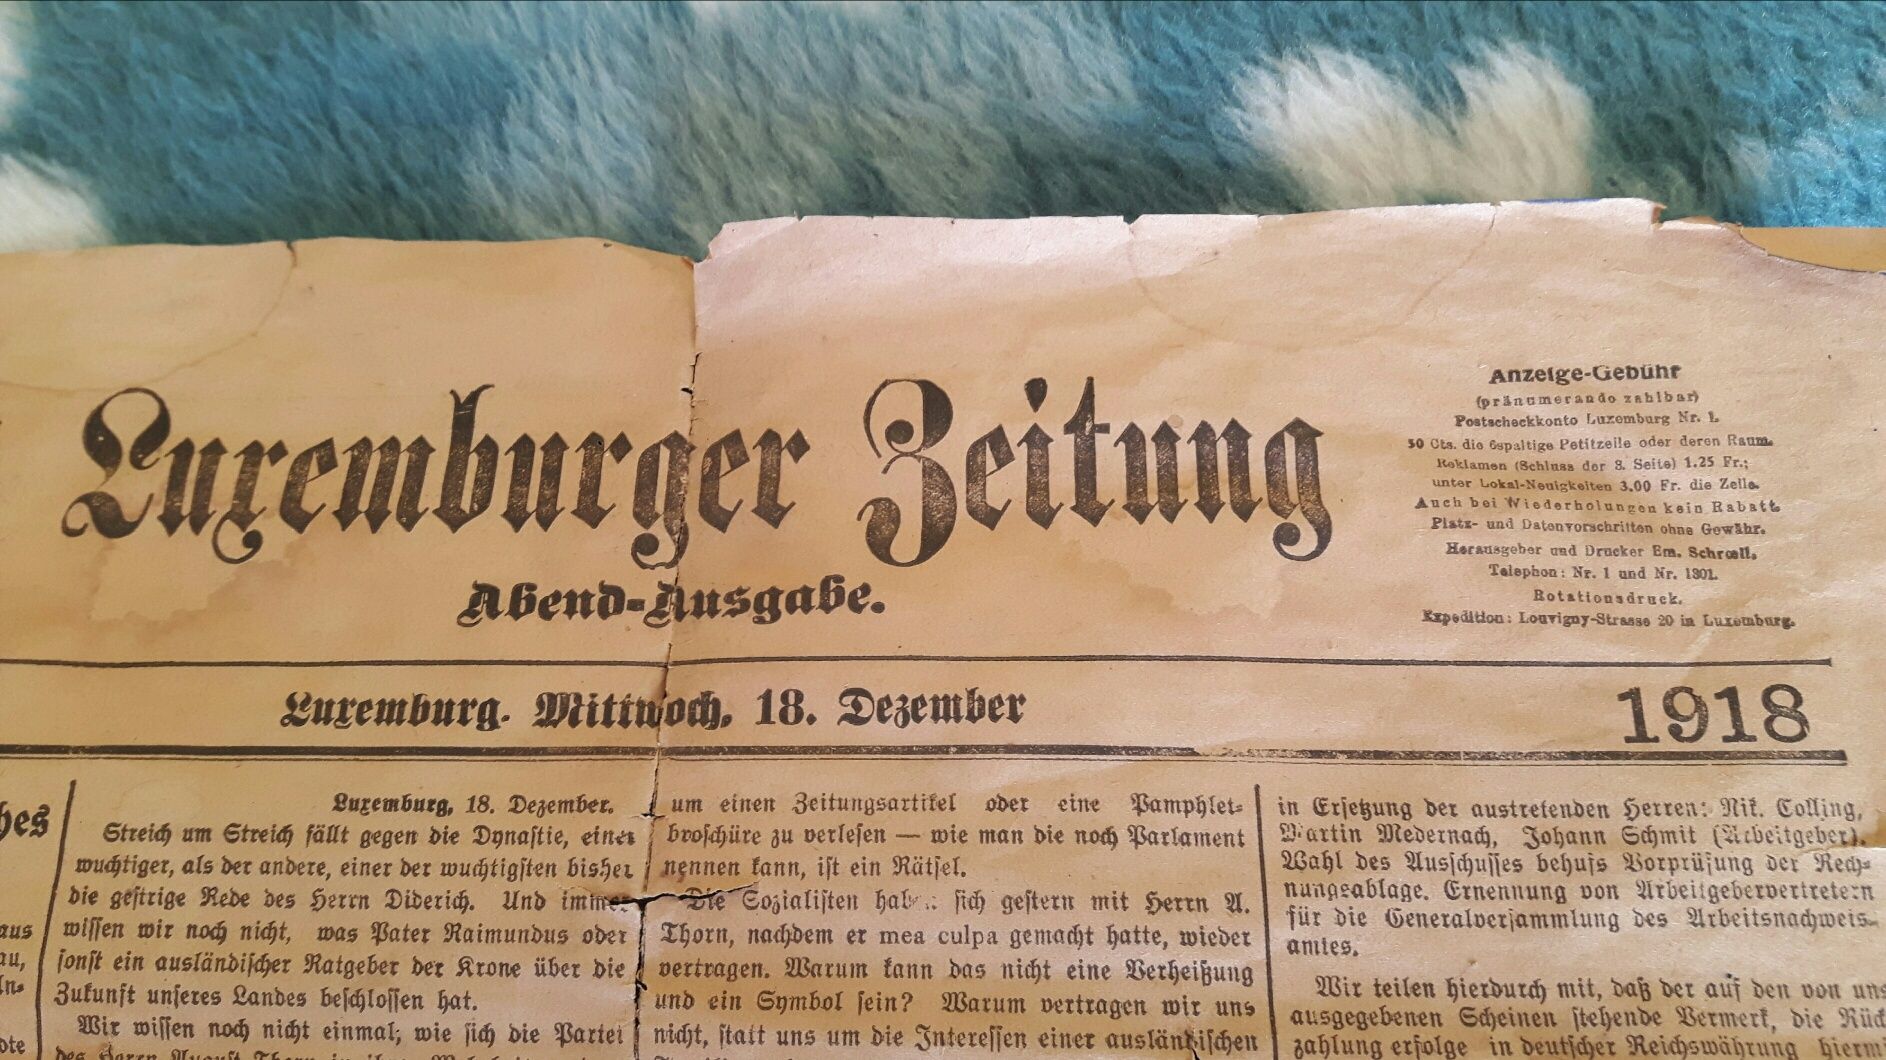 Stara Zabytkowa Gazeta Luksemburg z 1918 roku